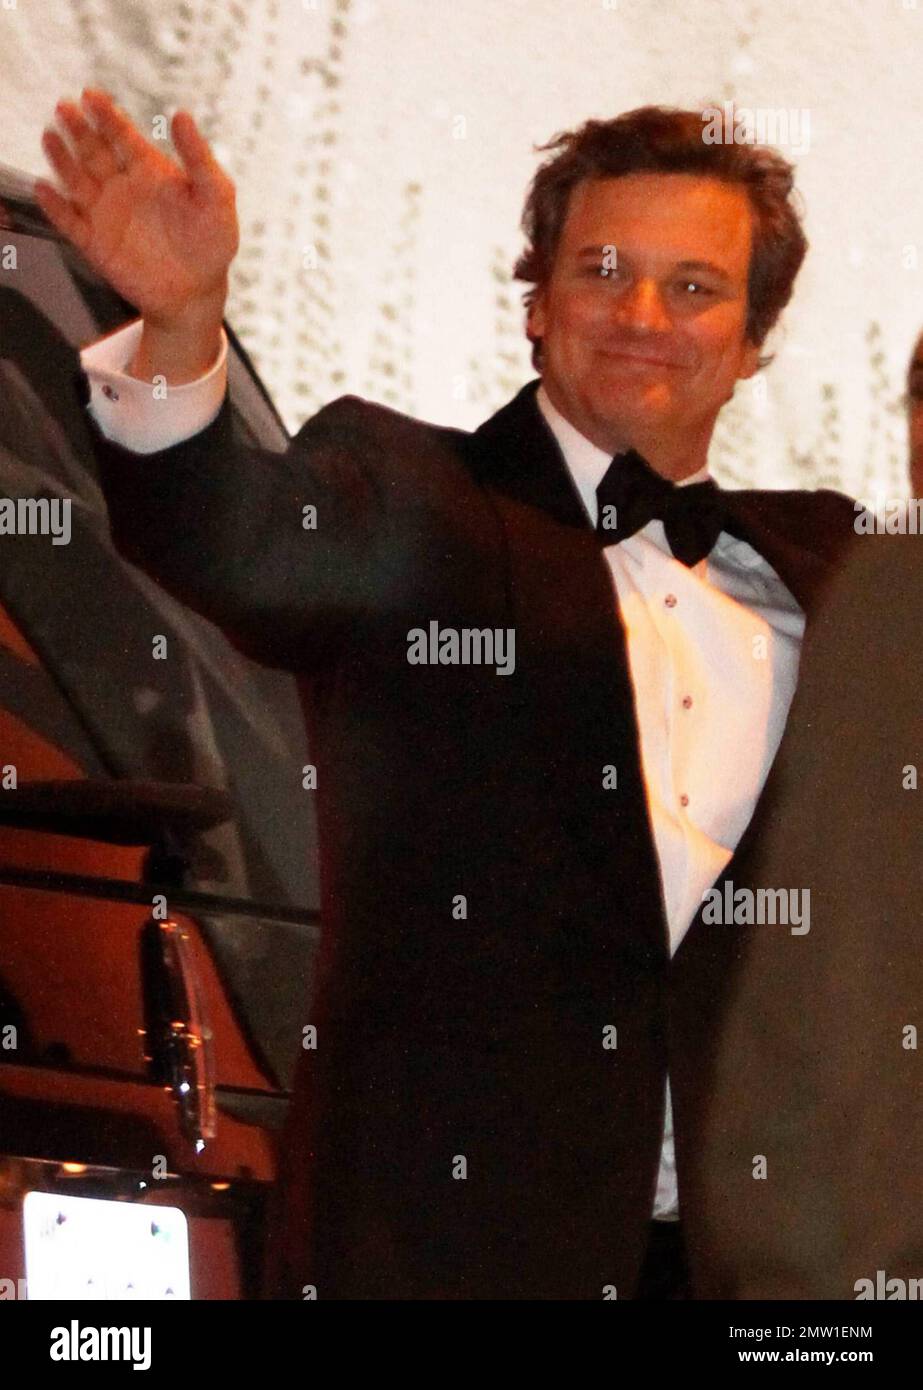 Le lauréat du prix Academy Award pour le meilleur acteur Colin Firth arrive  à la soirée Vanity Fair Oscars qui s'est tenue à l'hôtel Sunset Tower après  les Oscars 83rd annuels. Los